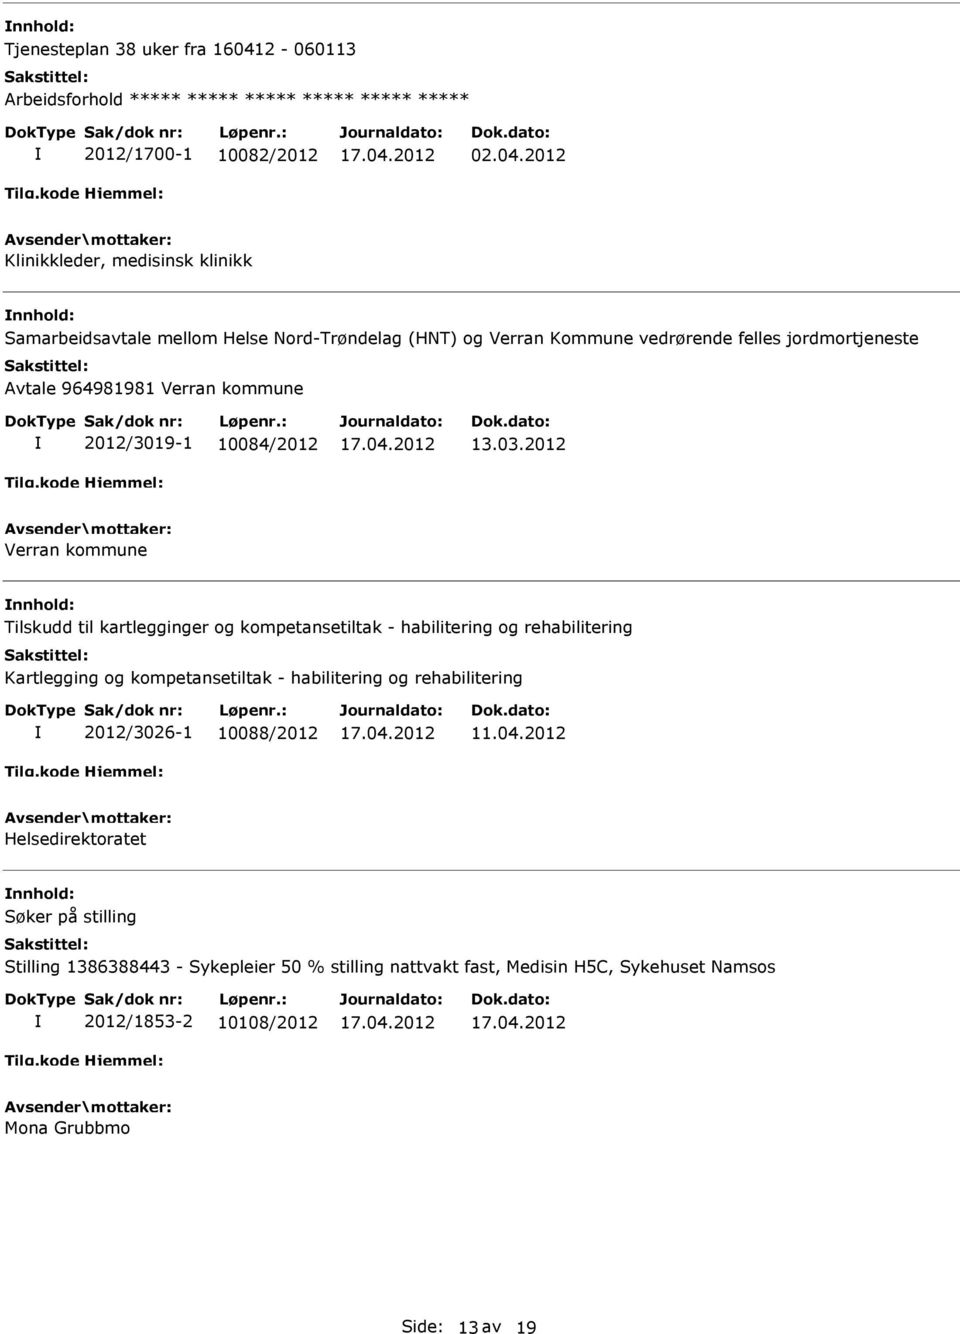 2012 Klinikkleder, medisinsk klinikk Samarbeidsavtale mellom Helse Nord-Trøndelag (HNT) og Verran Kommune vedrørende felles jordmortjeneste Avtale 964981981